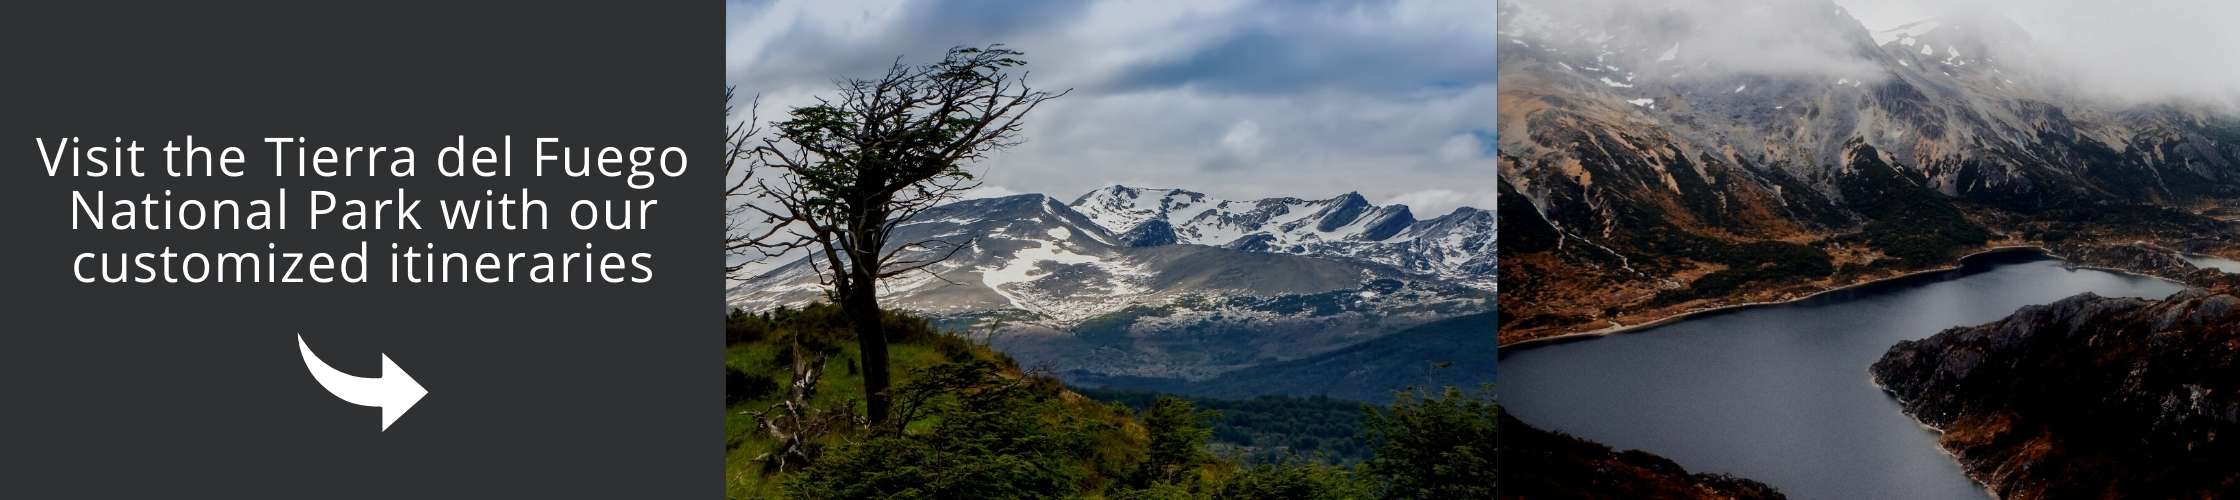 Visit the Tierra de Fuego National Park